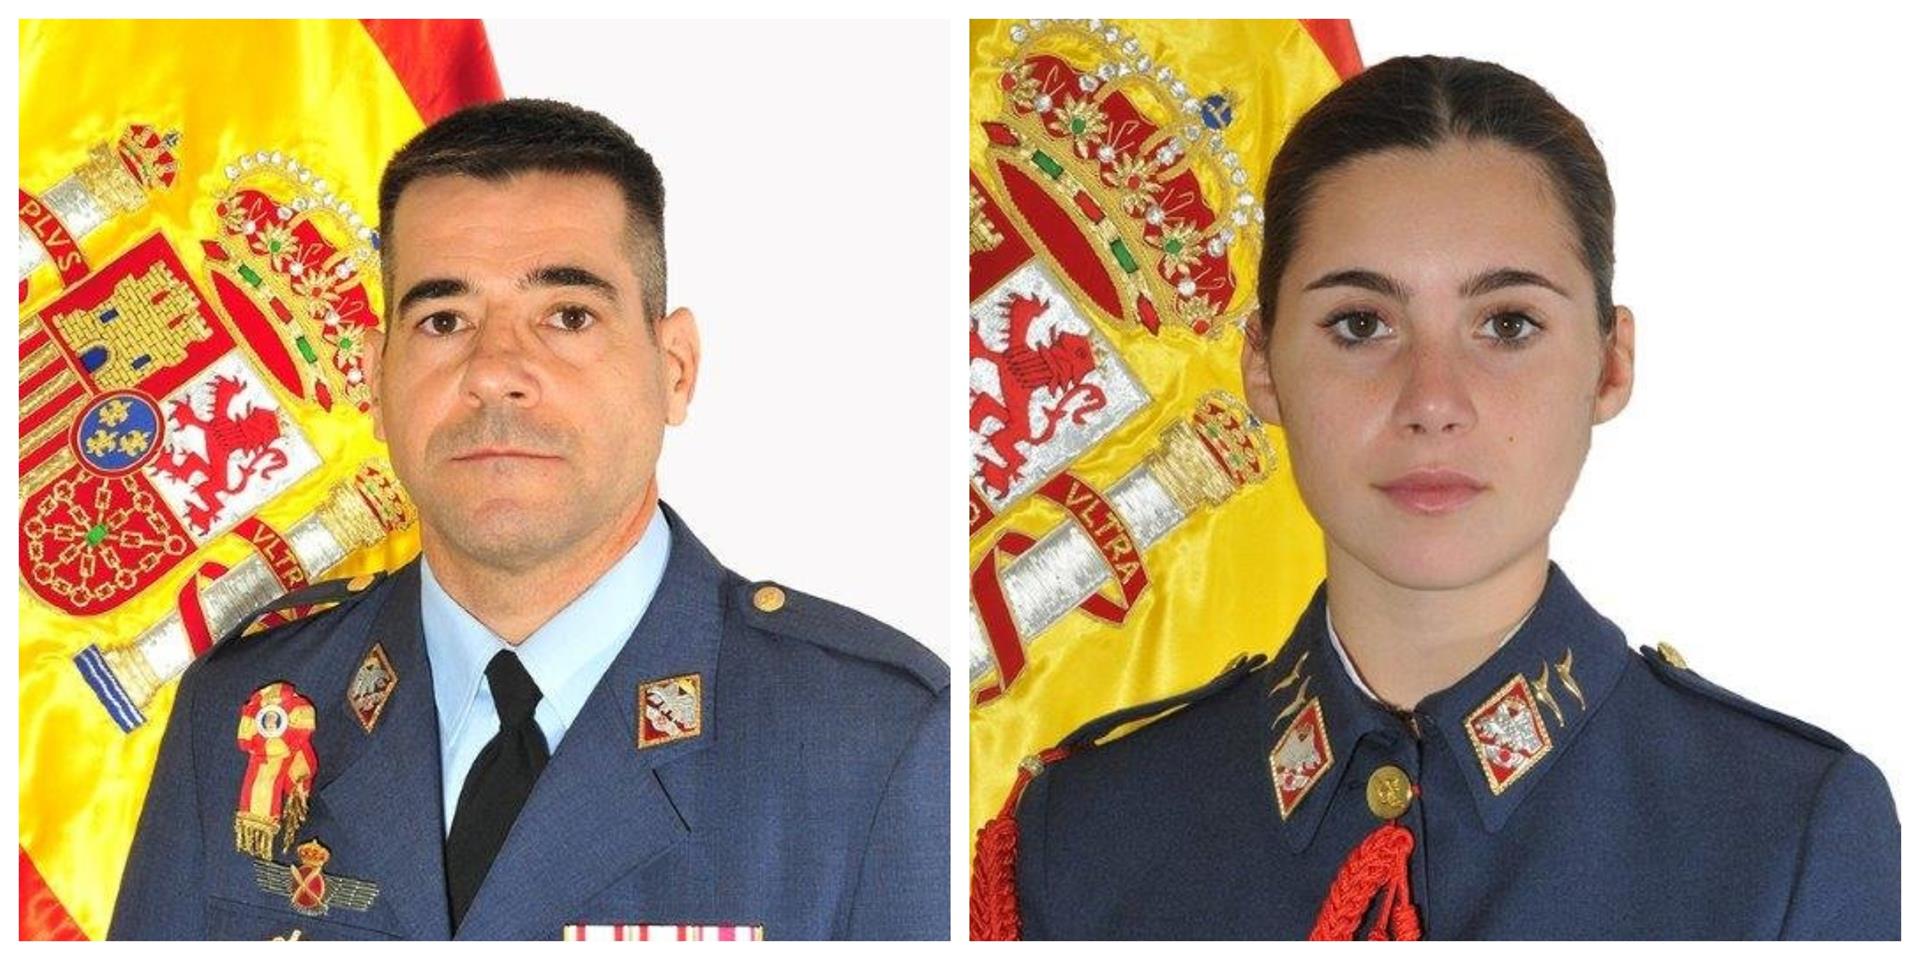 El comandante Daniel Melero, de 50 años y natural de Cádiz; y la alférez alumna Rosa María Almirón, de 20 años y natural de Lucena, fallecidos en Murcia.